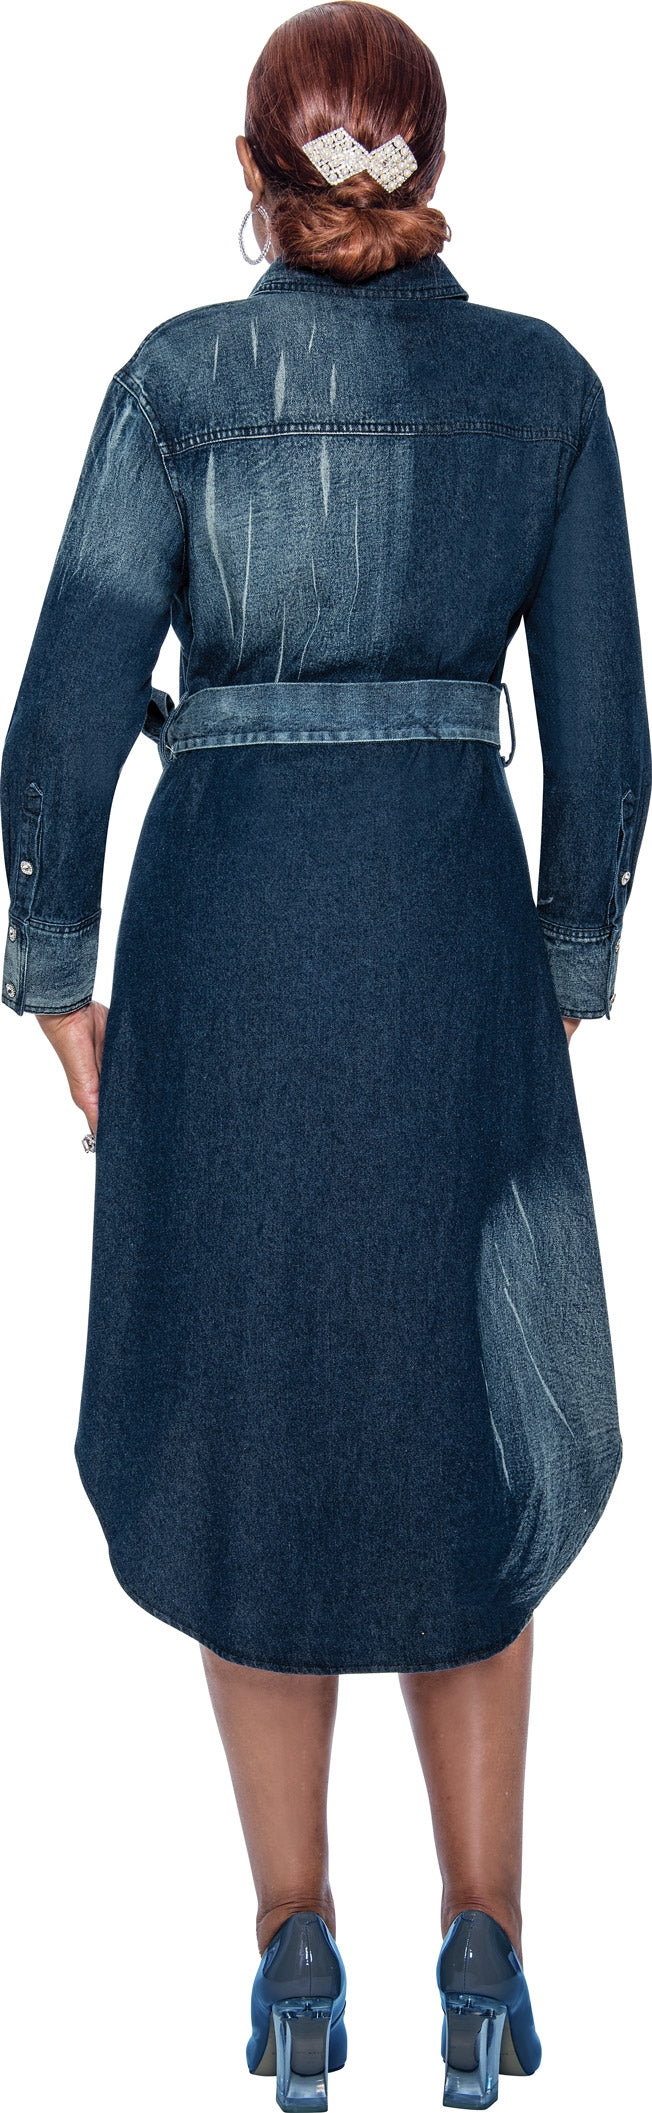 Dorinda Clark Cole Dress 4981C-Blue - Church Suits For Less